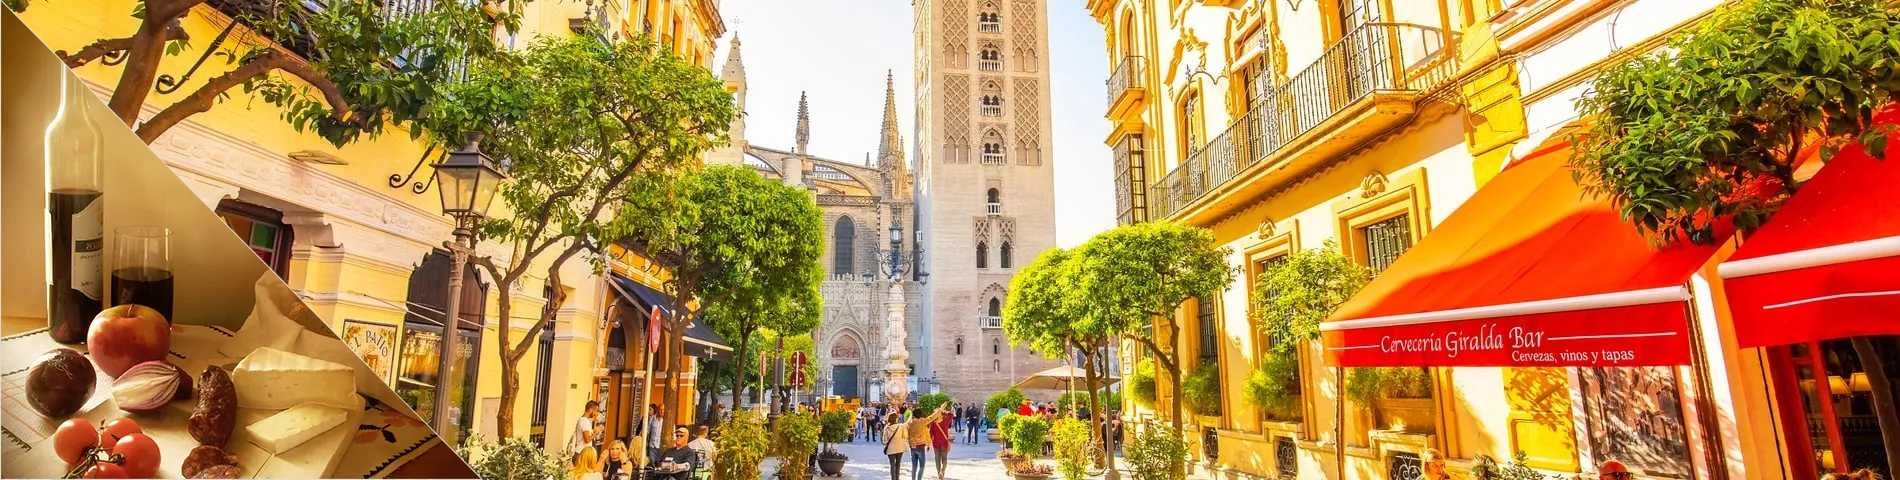 Sevilla - Espanyol i Cultura